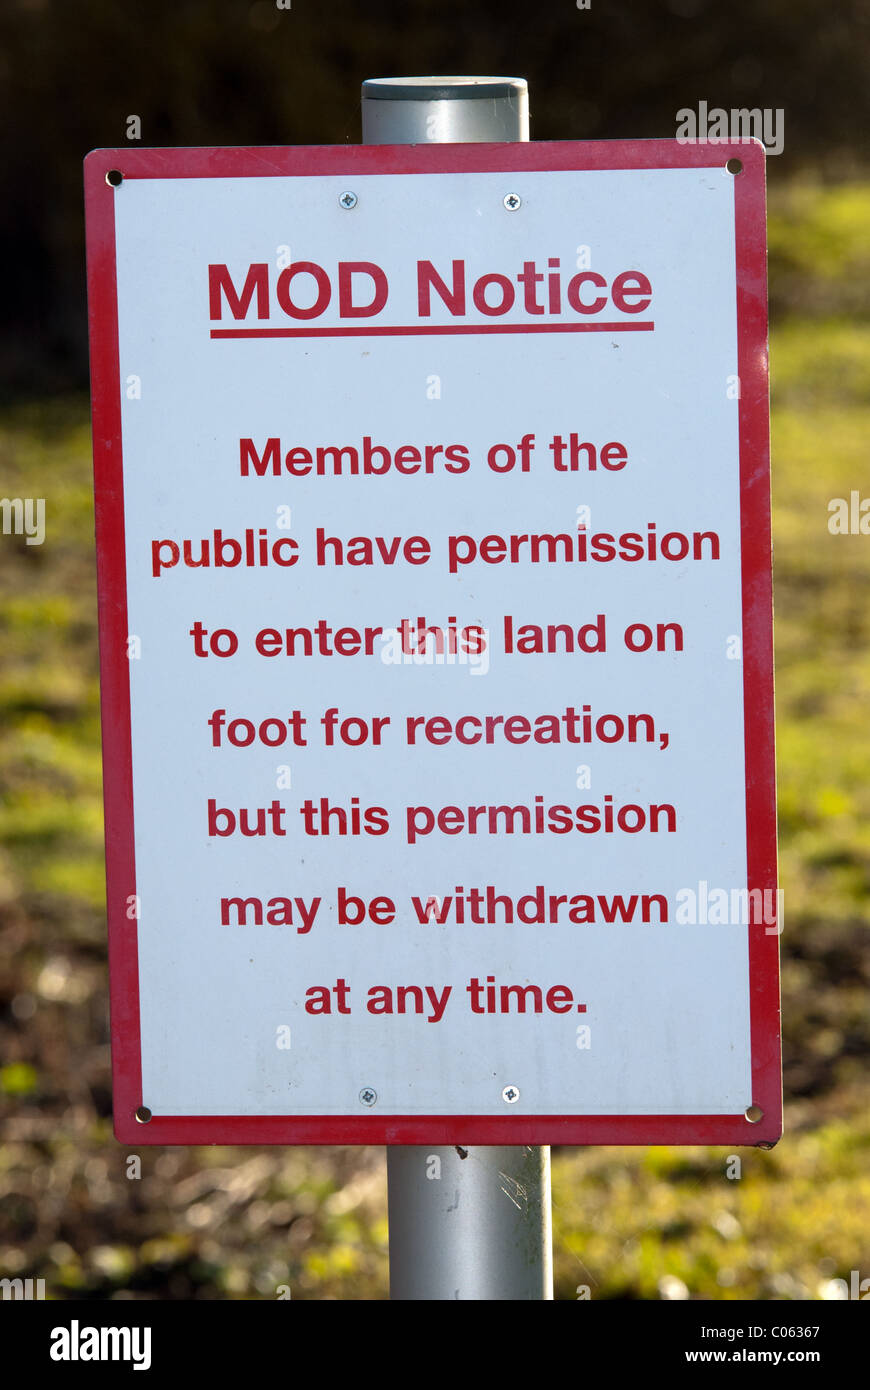 Ein Warnsignal britischen Verteidigungsministerium berät der Öffentlichkeit Zugang haben, aber dass Zugang jederzeit zurückgenommen werden kann. In einem UK-Dorf. Stockfoto